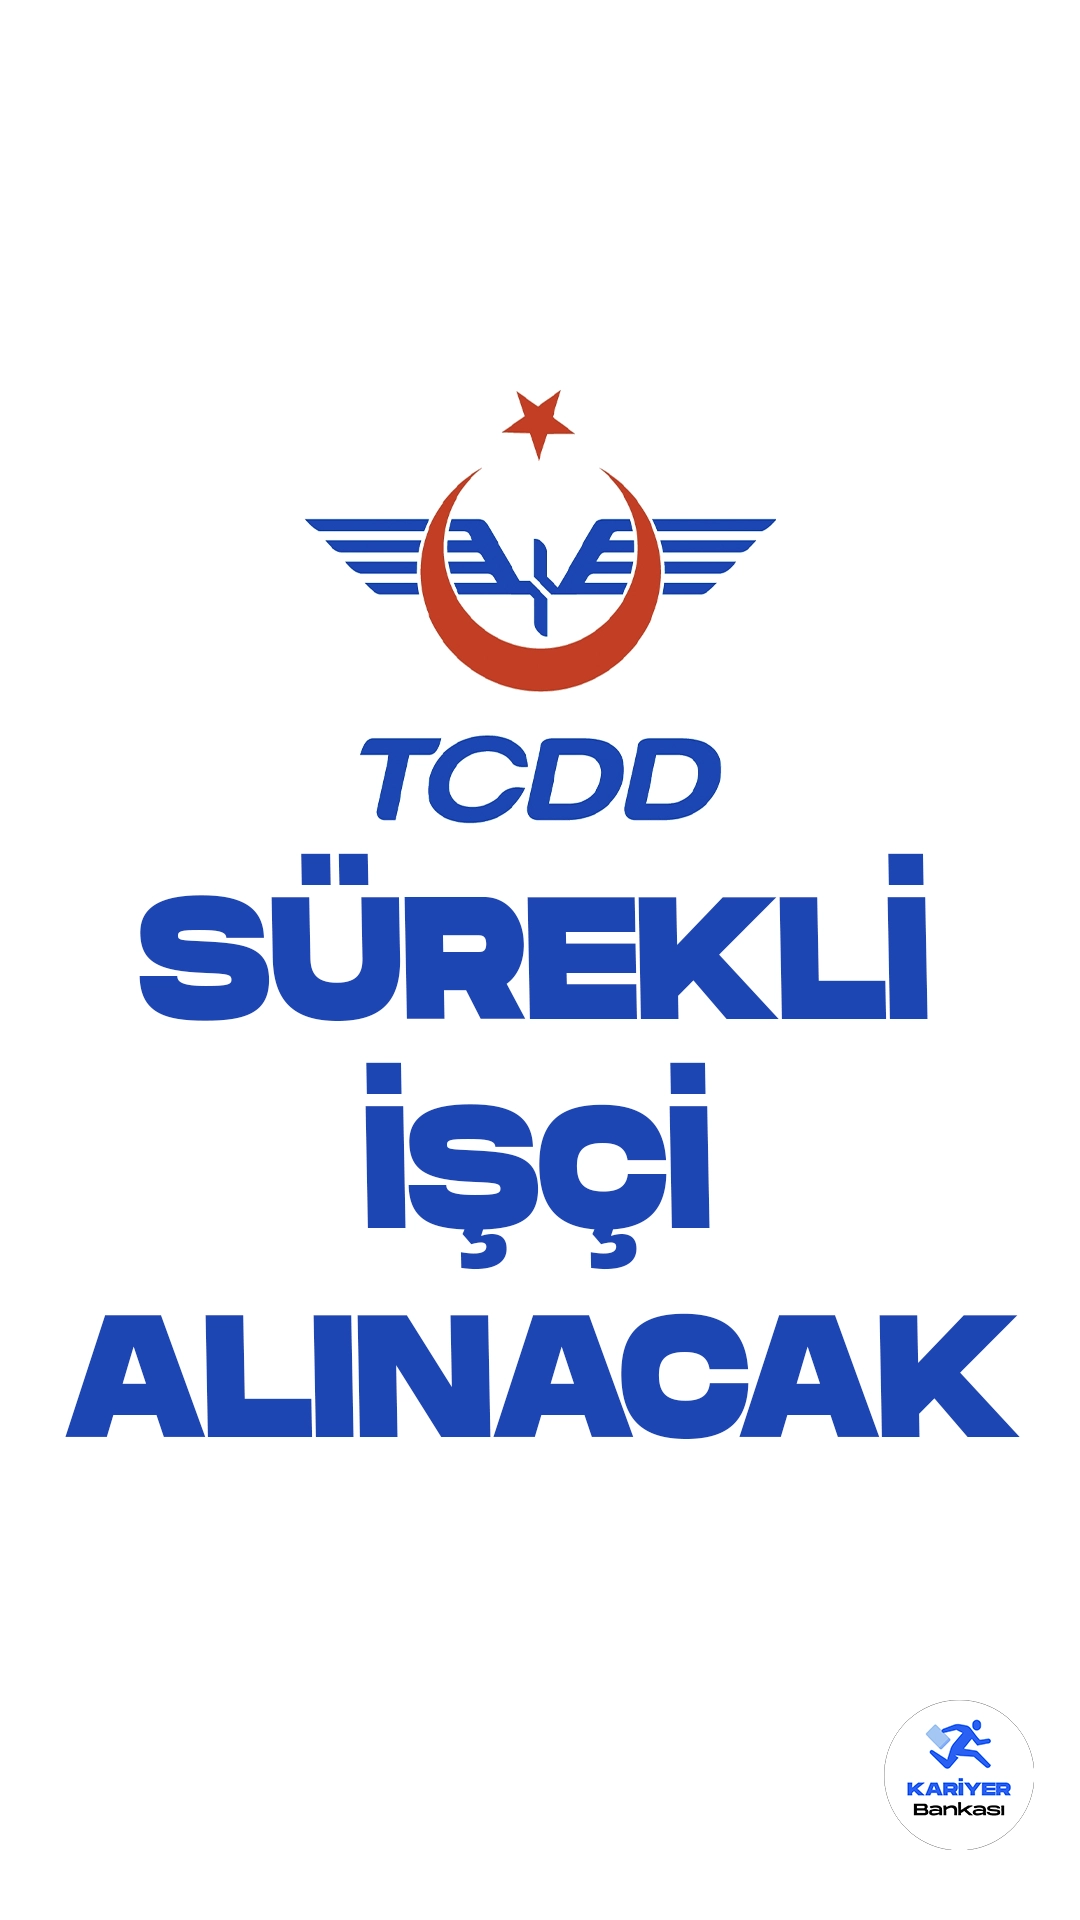 TCDD 24 Sürekli İşçi Alımı Yapacak. Türkiye Cumhuriyeti Devlet Demiryolları işçi alımı (TCDD) duyurusu yayımlandı. Cumhurbaşkanlığı SBB ve İŞKUR üzerinden yayımlana duyurulara göre, TCDD'ye sürekli işçi alımı yapılacağı aktarıldı. Başvurular bugün itibarıyla alınmaya başlandı. Başvuru yapacak adayların genel ve özel şartları sağlaması gerekmektedir.